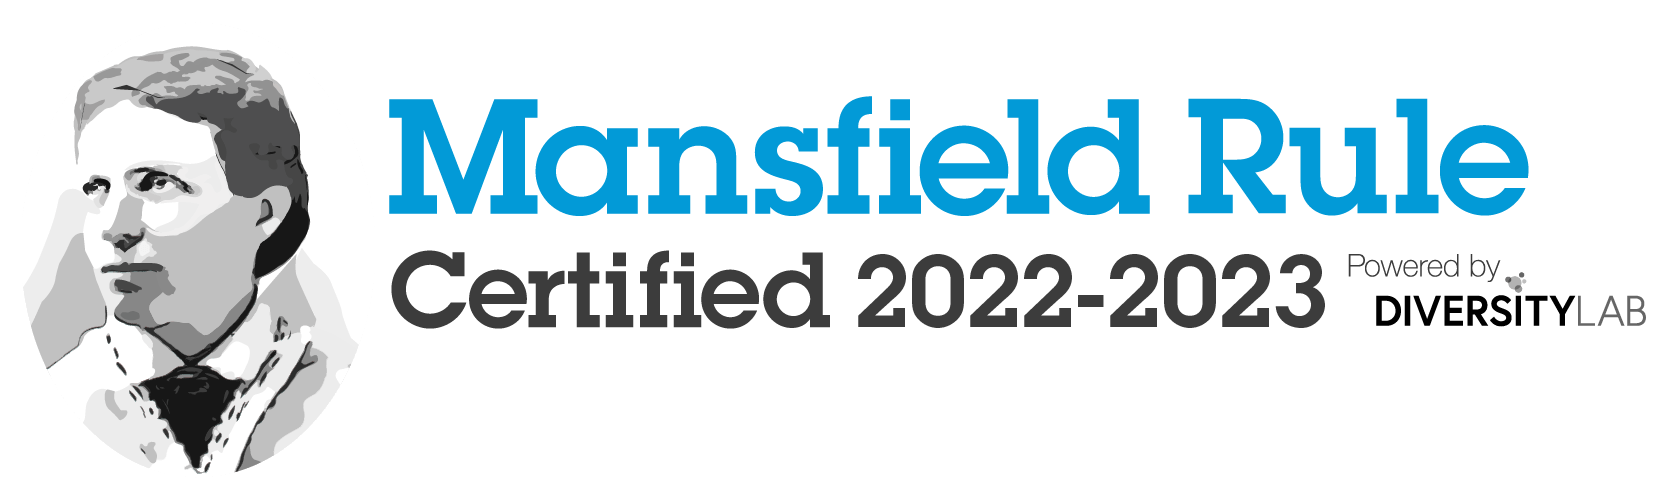 Mansfield Certification Badge Color Arabella 2022 2023 V1